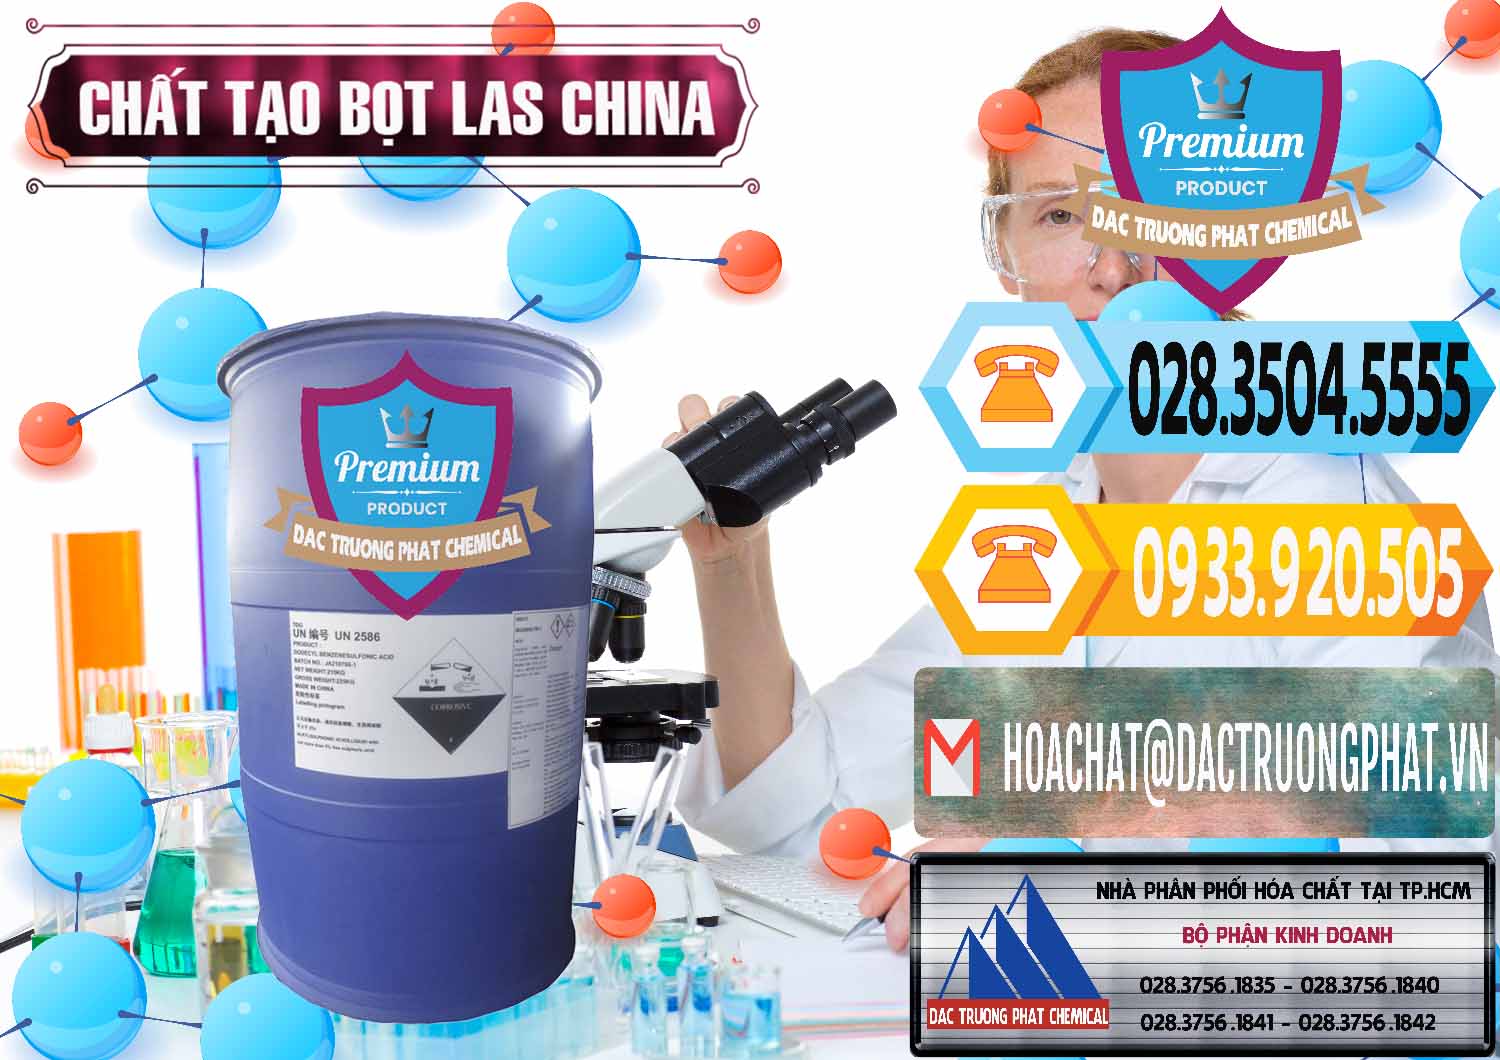 Nhà cung cấp _ bán Chất tạo bọt Las Trung Quốc China - 0451 - Đơn vị chuyên phân phối và bán hóa chất tại TP.HCM - hoachattayrua.net